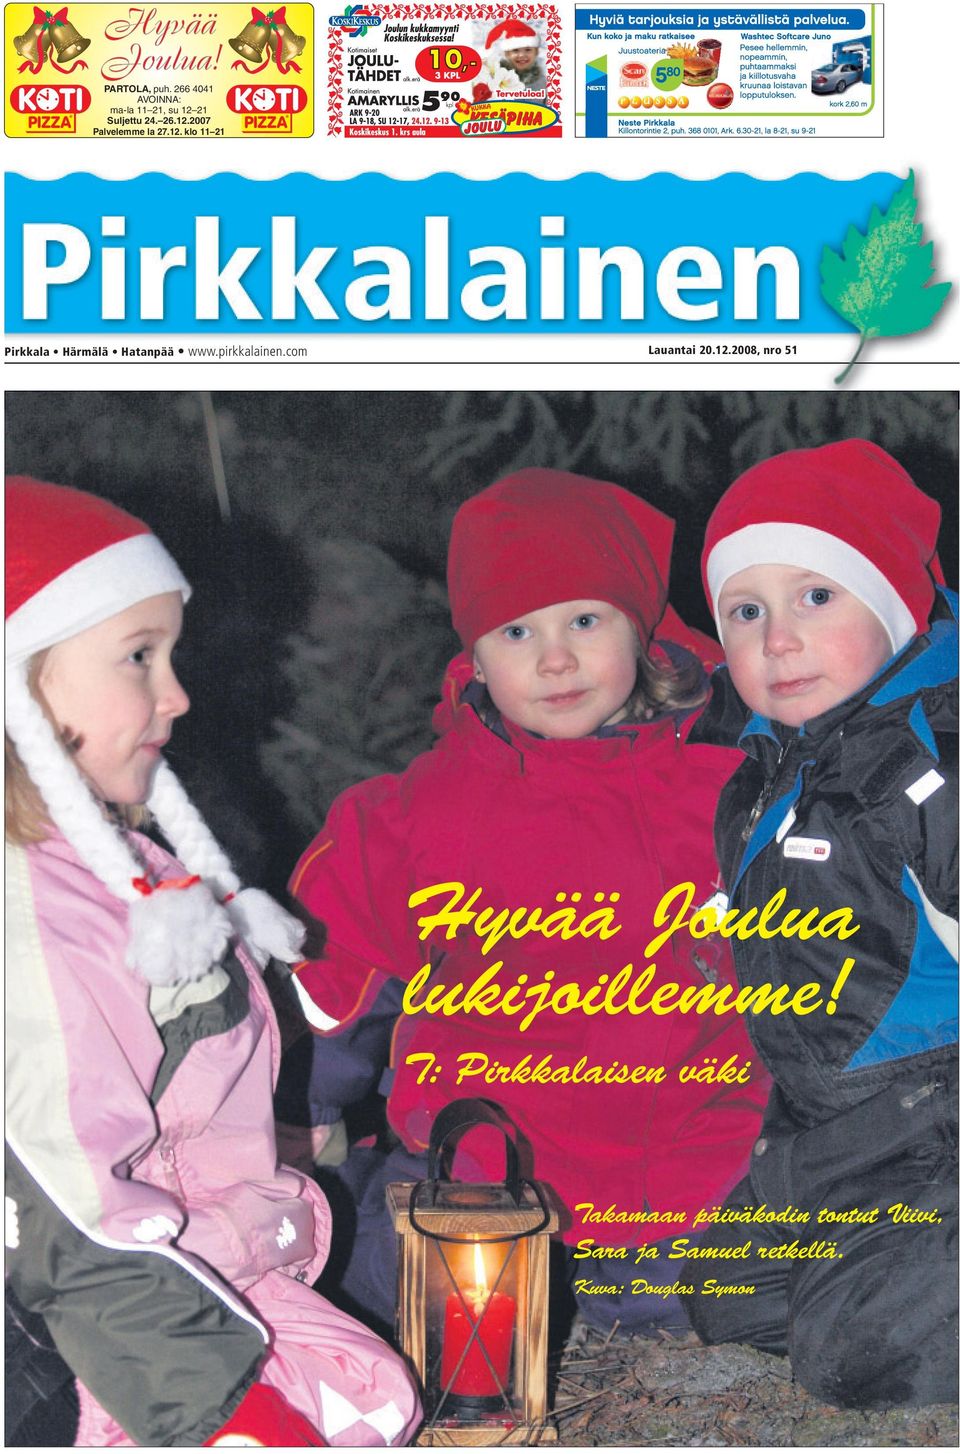 pirkkalainen.com Lauantai 20.12.2008, nro 51 Hyvää Joulua lukijoillemme!